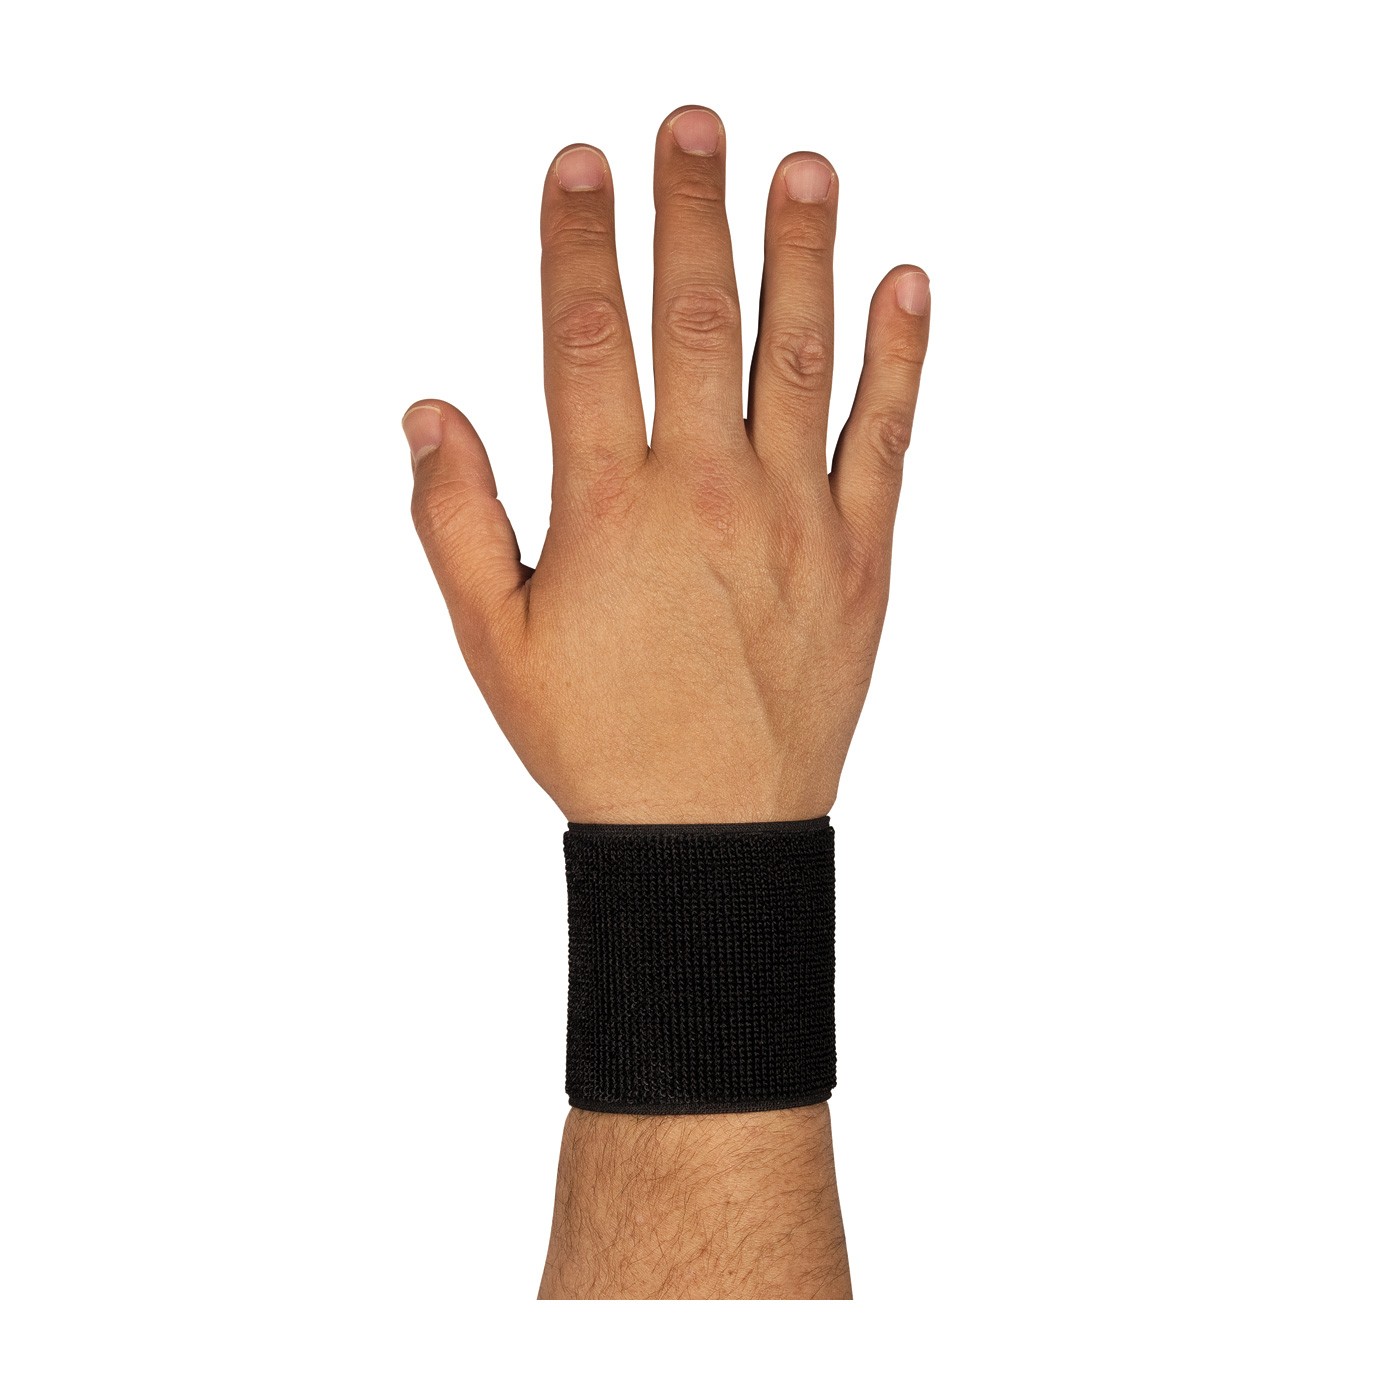 Wrist Support w/ Stays, Sm 5.5-6", Terry/Neoprene, Hook & Loop Closure